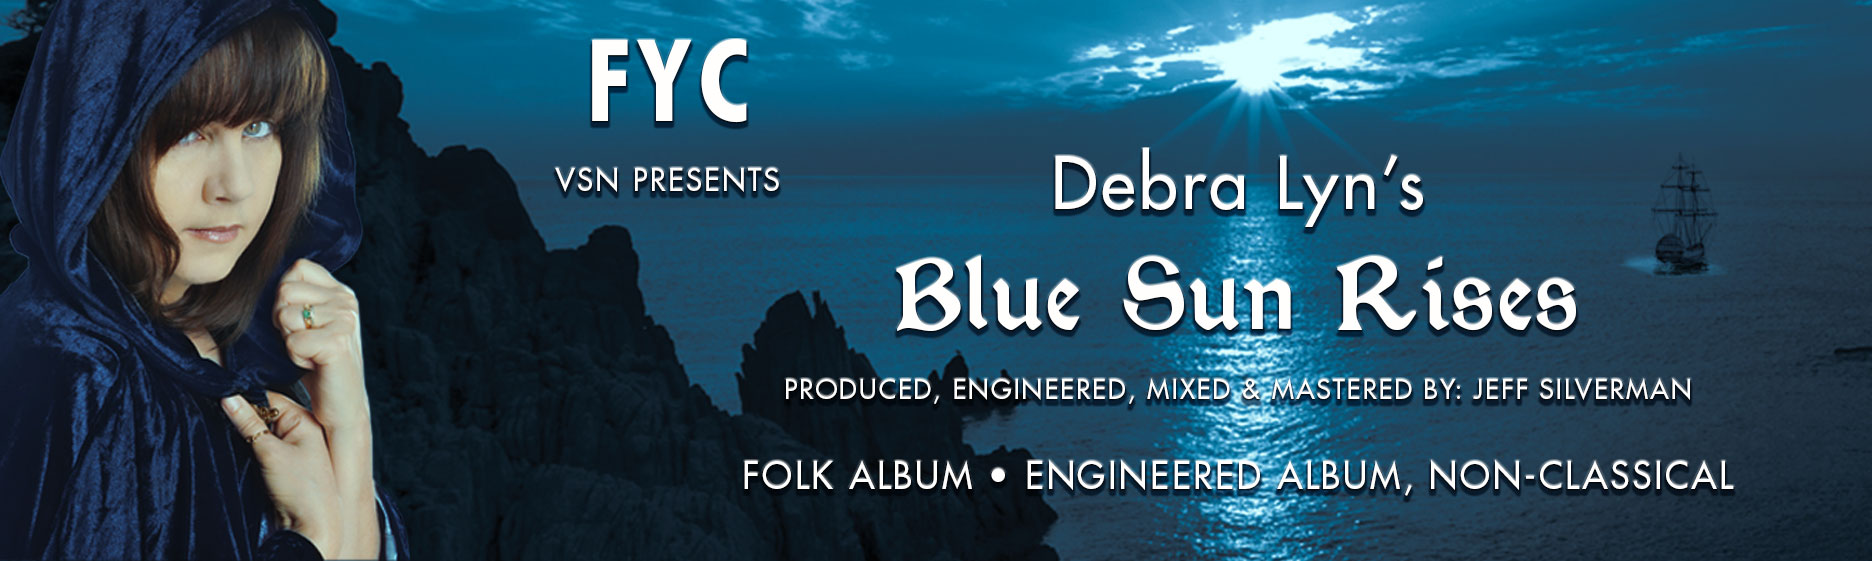 FYC - Debra Lyn's "Blue Sun Rises"